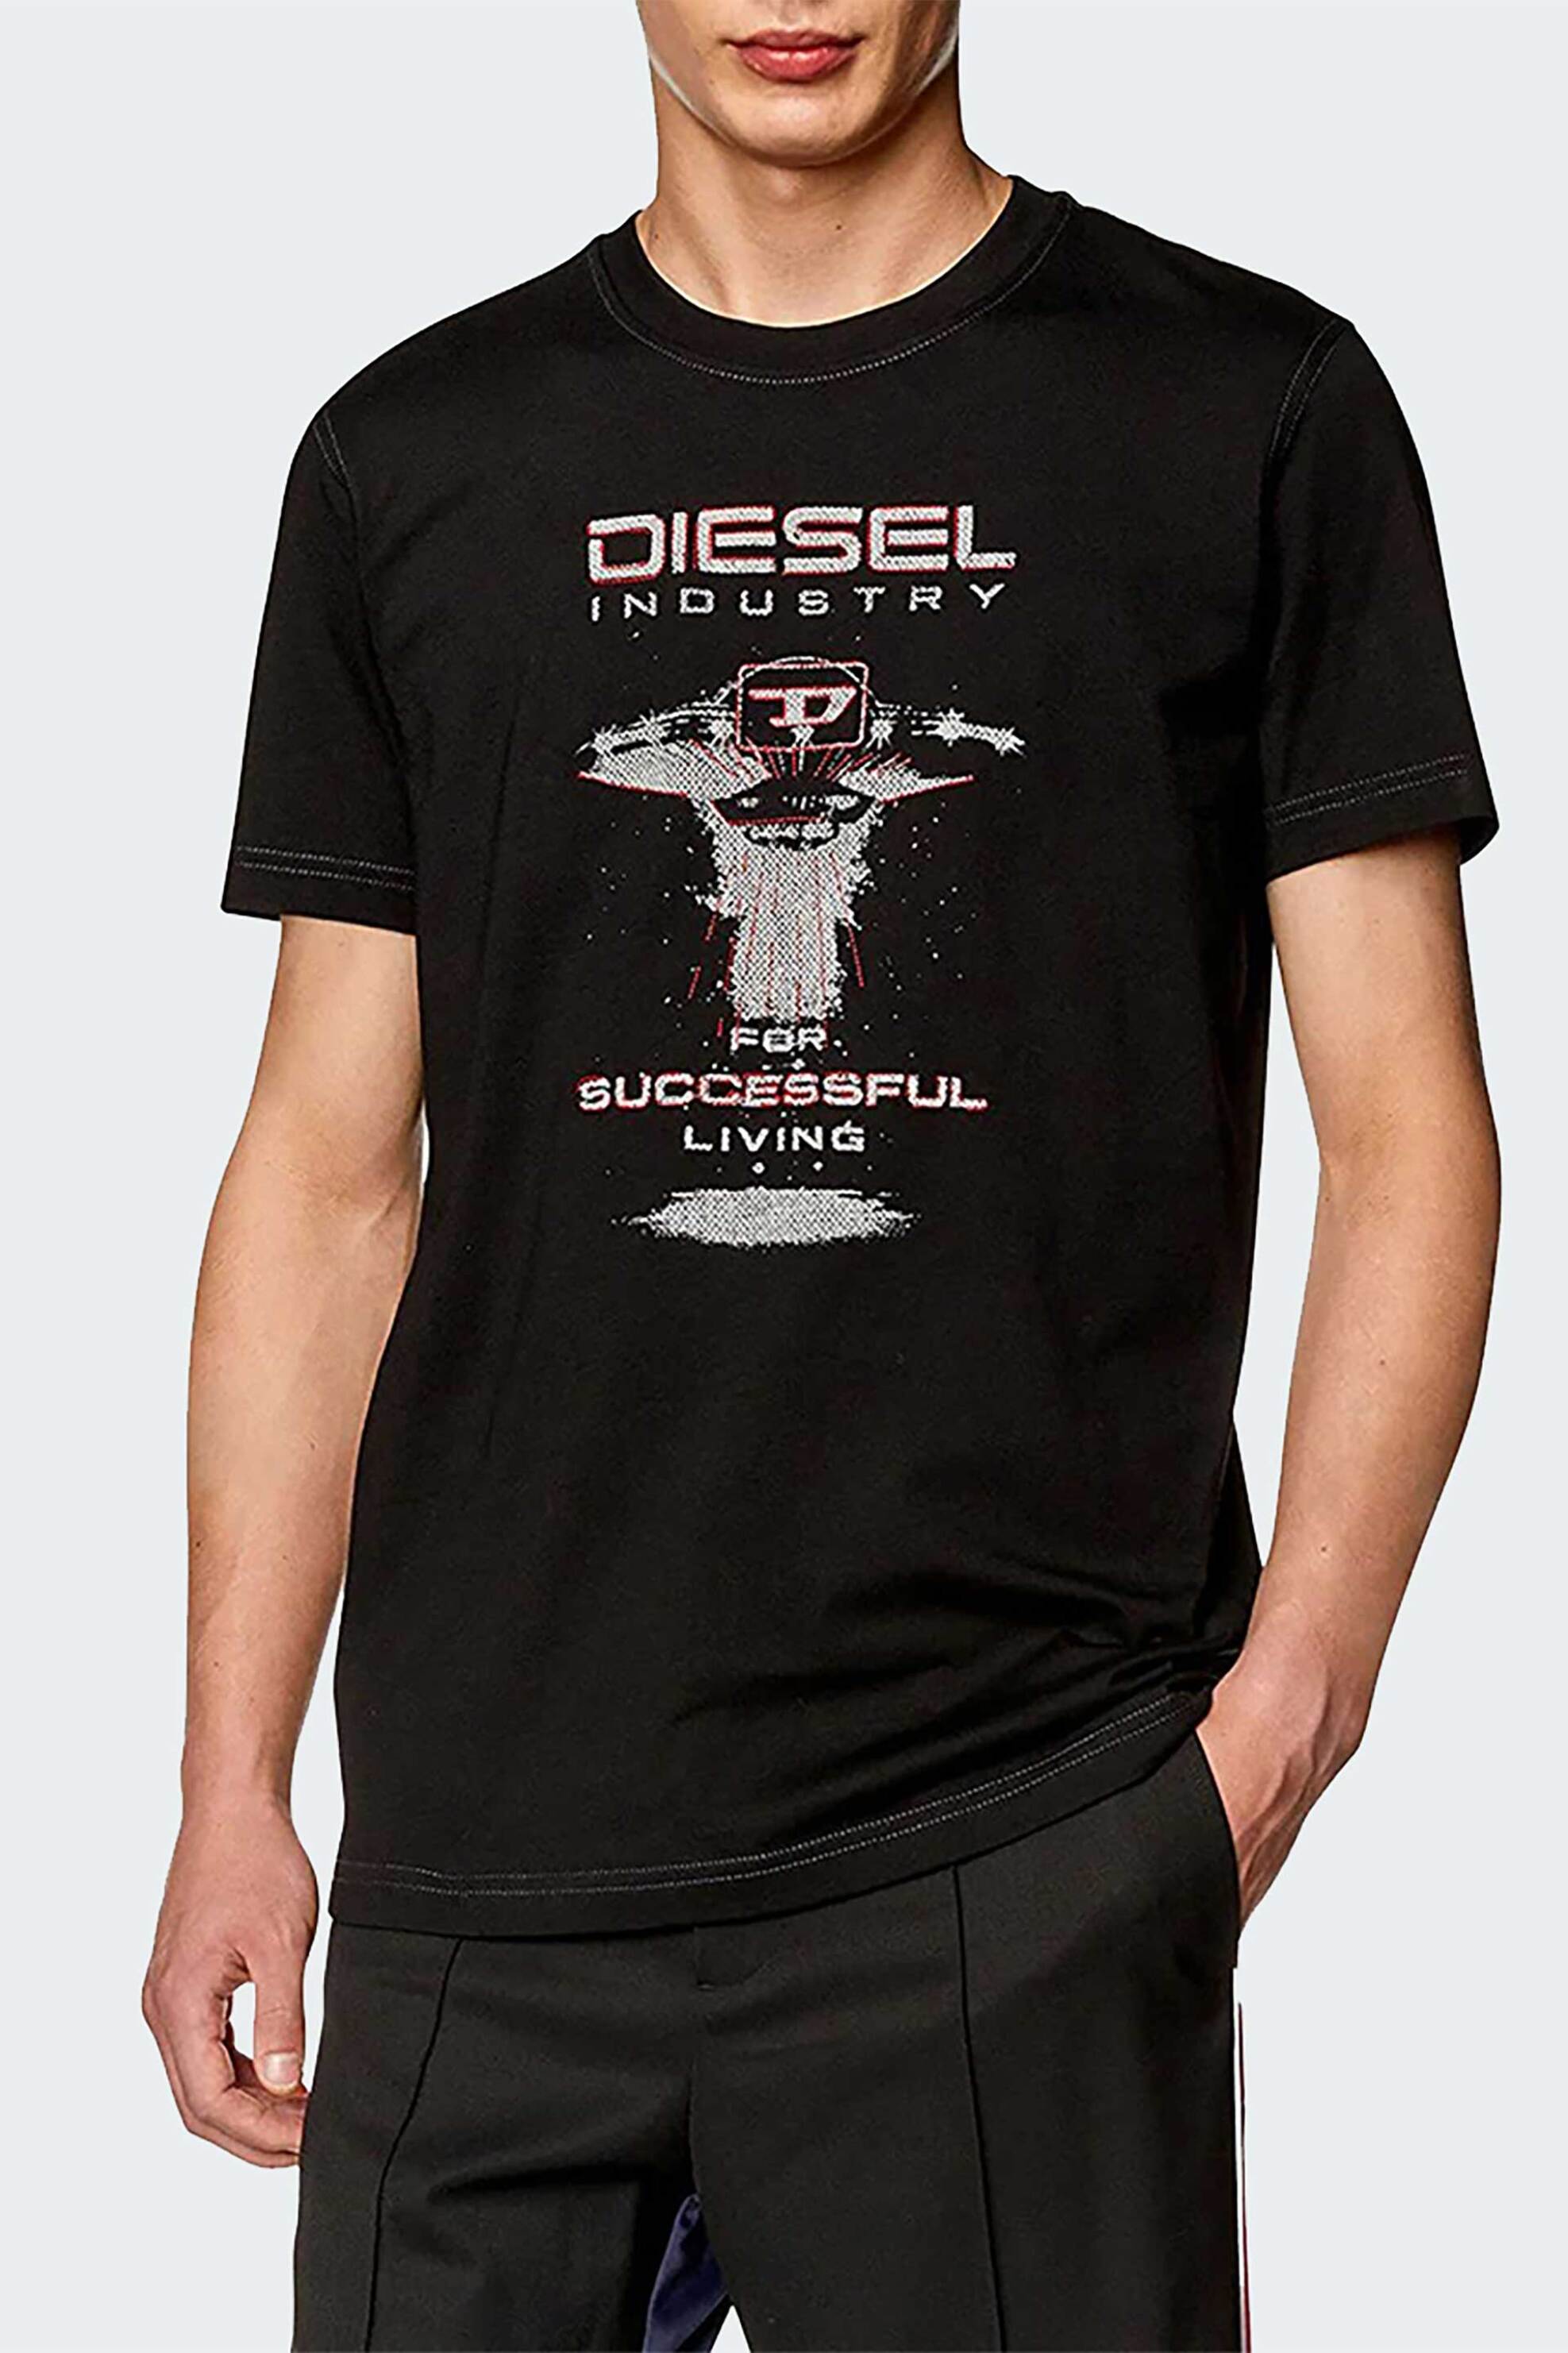 Ανδρική Μόδα > Ανδρικά Ρούχα > Ανδρικές Μπλούζες > Ανδρικά T-Shirts Diesel ανδρικό T-shirt με graphic print Regular Fit - S24A124970GRAI Μαύρο